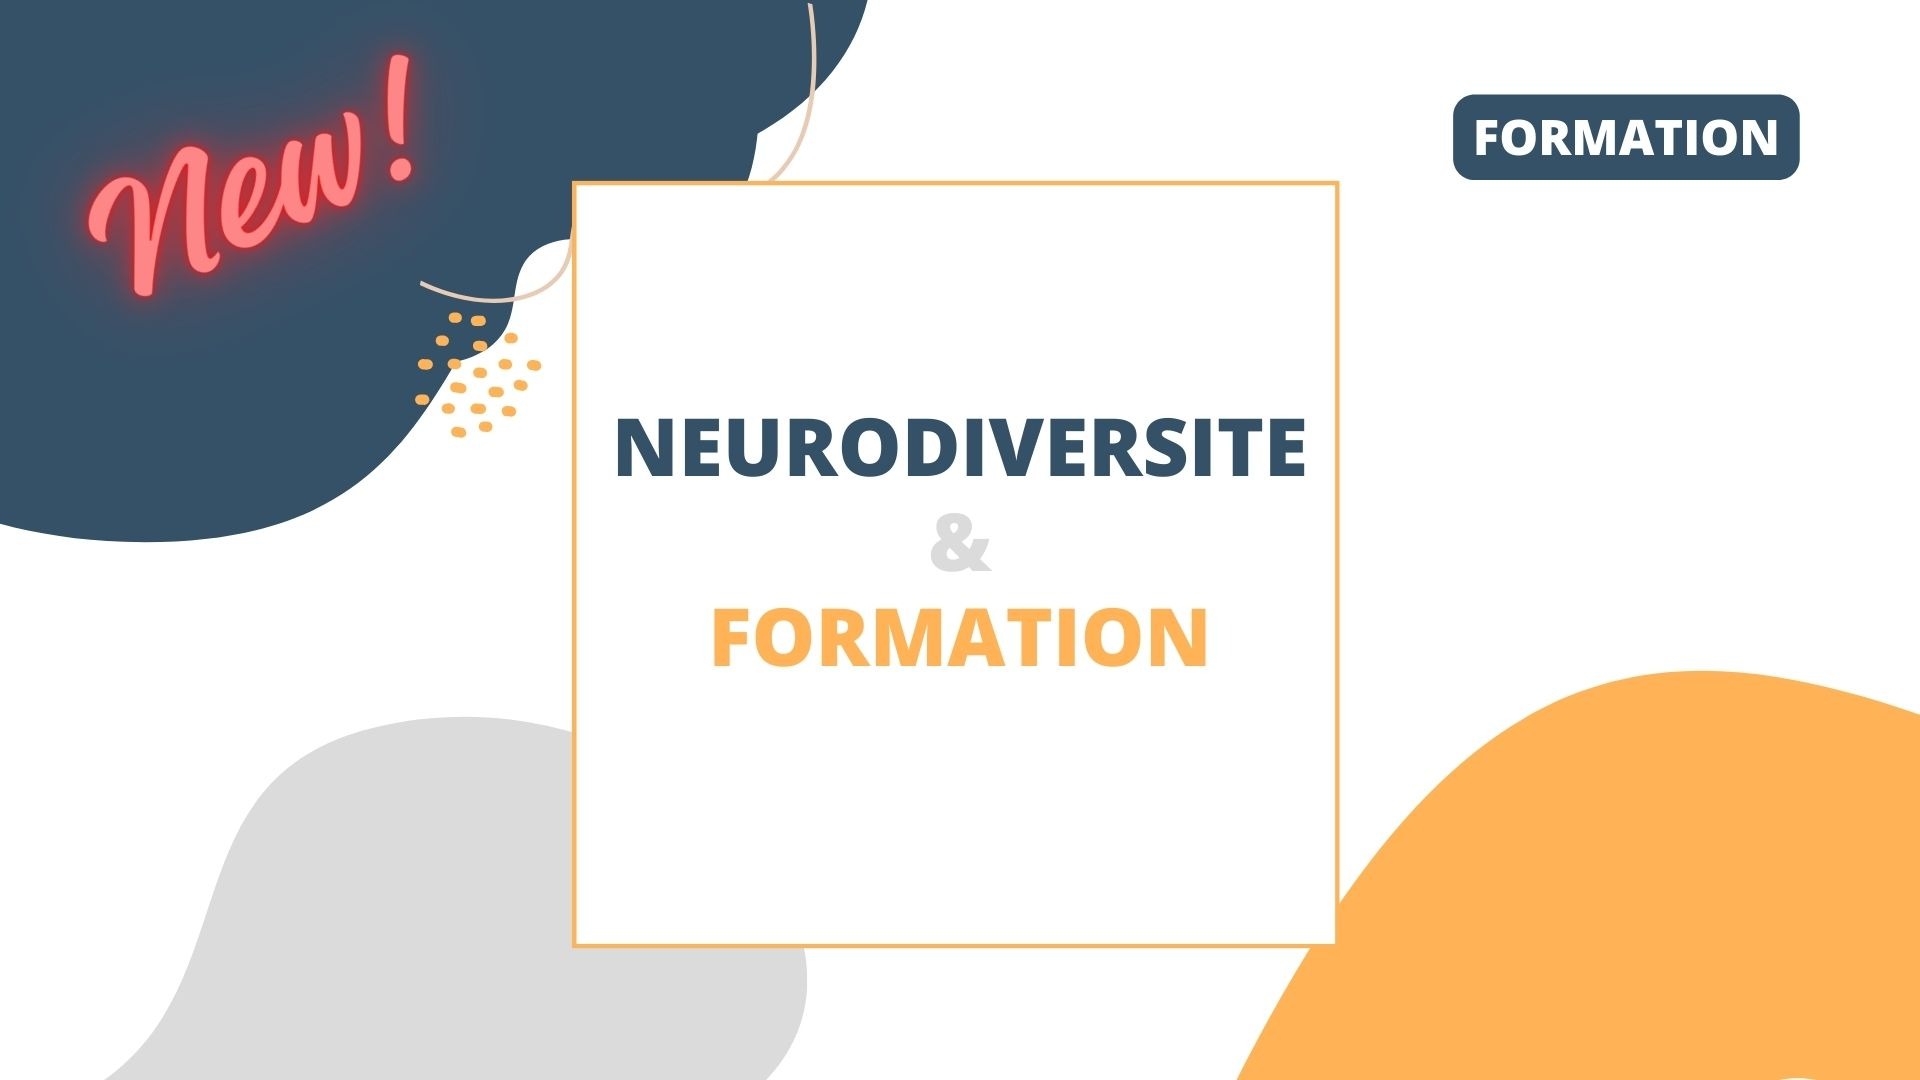 Représentation de la formation : Formation & Neurodiversité